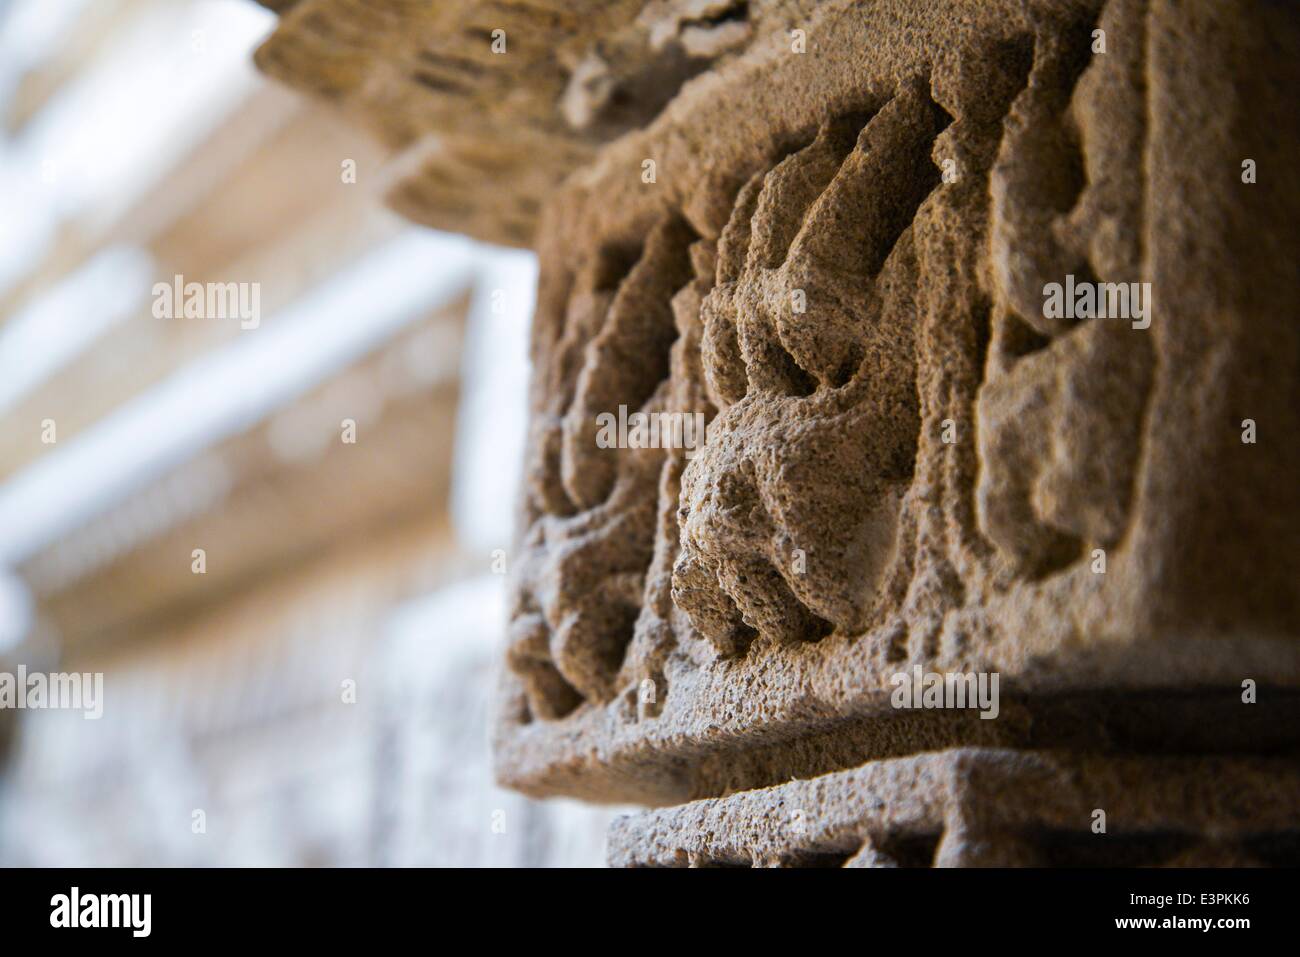 Les sculptures complexes de la structure de 'Rani-ki-Vav'. Rani ki Vav est l'un des meilleurs cages en Inde. Il s'agit d'une cage au Gujarat, construite au 11e siècle en mémoire du Roi Bhimdev I de la dynastie Solanki. La cage a été approuvé par l'UNESCO comme site du patrimoine mondial pour son exceptionnel exemple de développement technologique dans l'utilisation des ressources en eau du sol. (Photo de Nisarg/Lakhamani Pacific Press) Banque D'Images